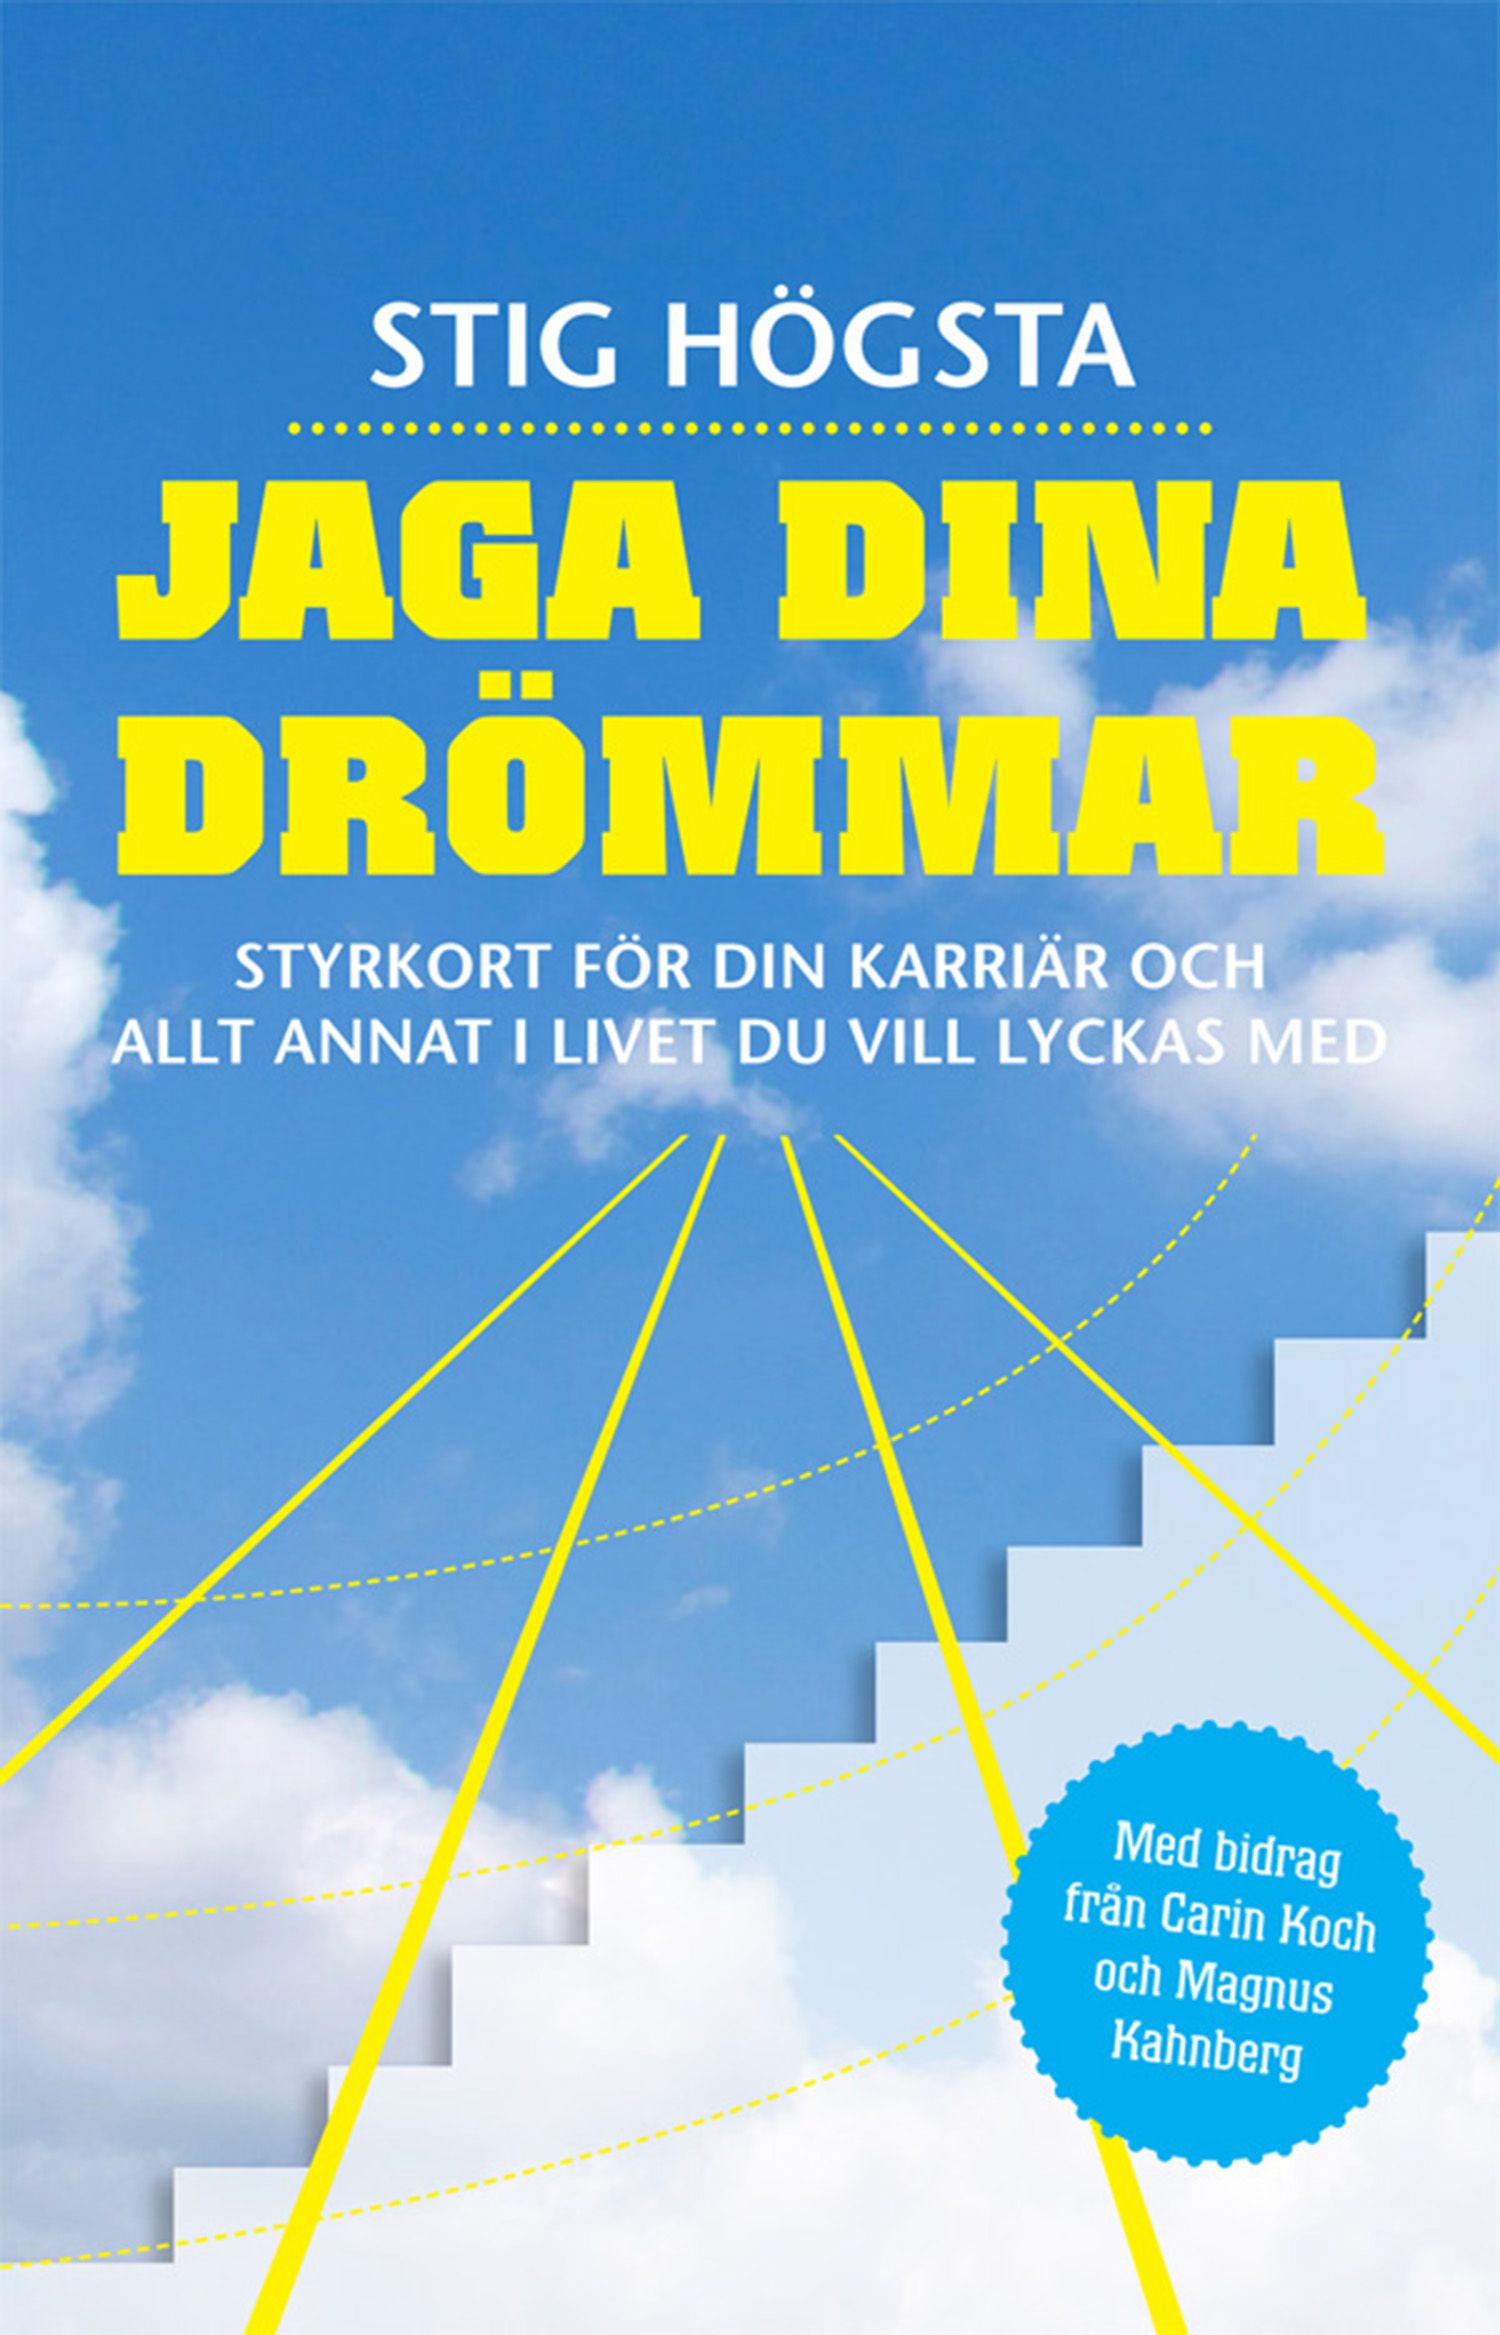 Jaga dina drömmar : Styrkort för din karriär och allt annat i livet du vill lyckas med, e-bog af Stig Högsta